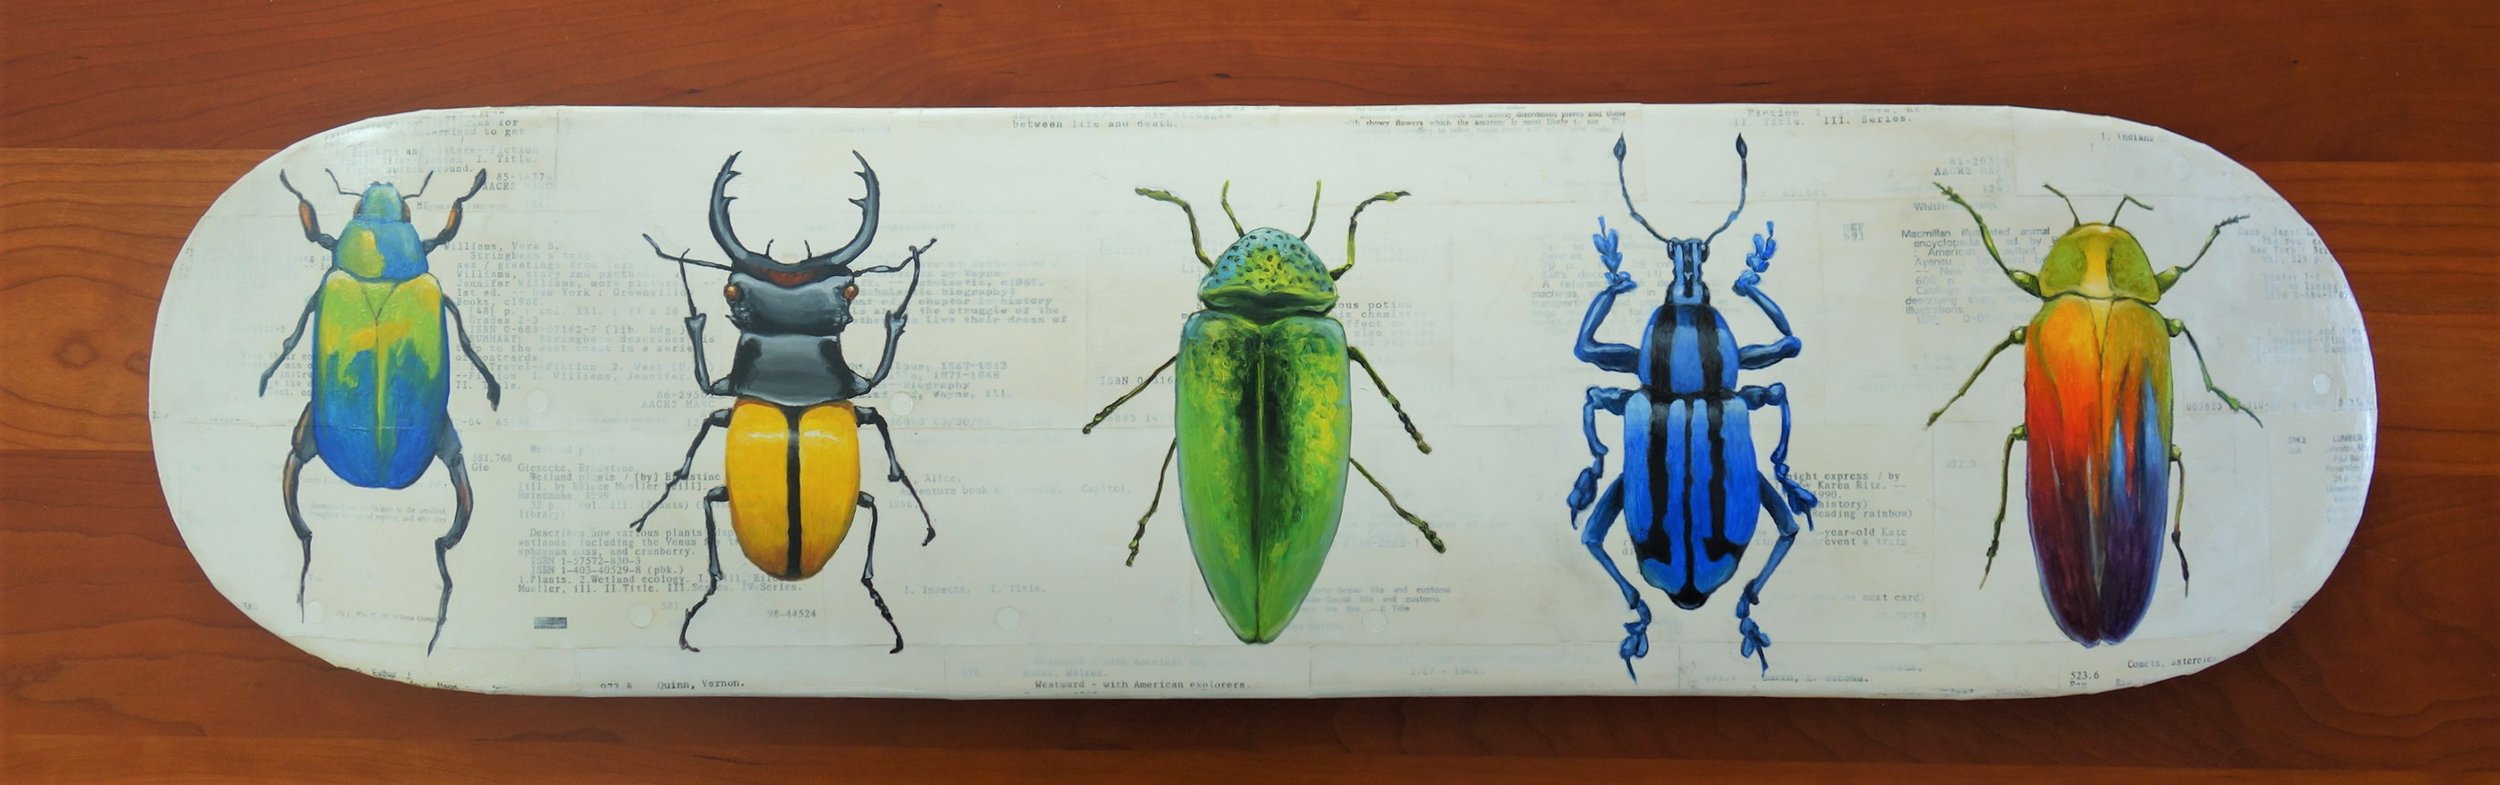 Meet the Beetles